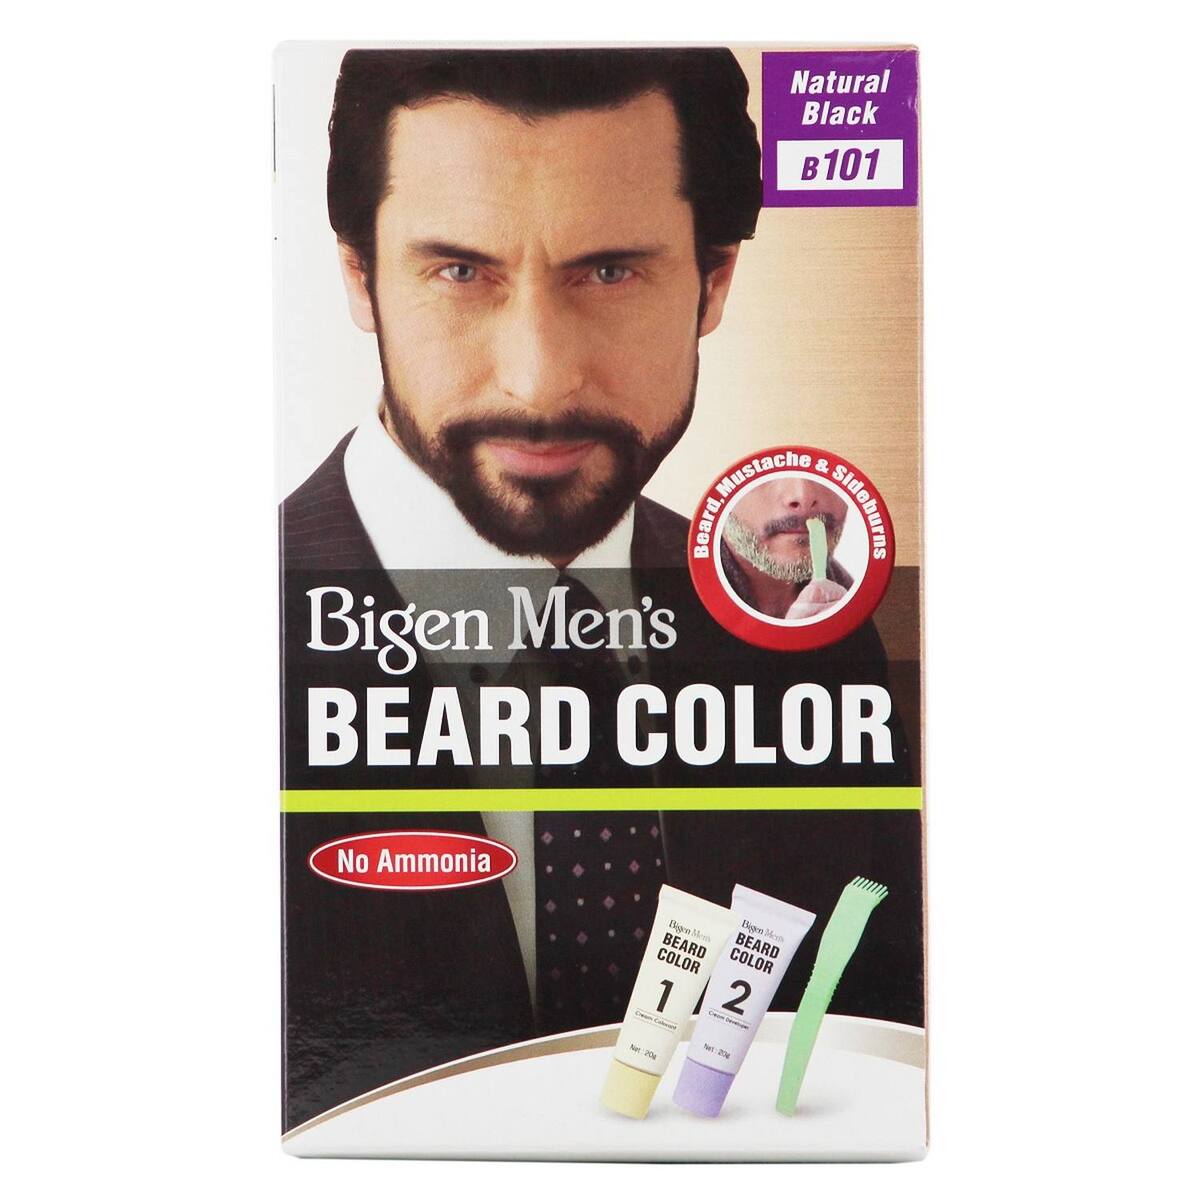 Bigen Men's Beard Color Natural Black B 101 1's